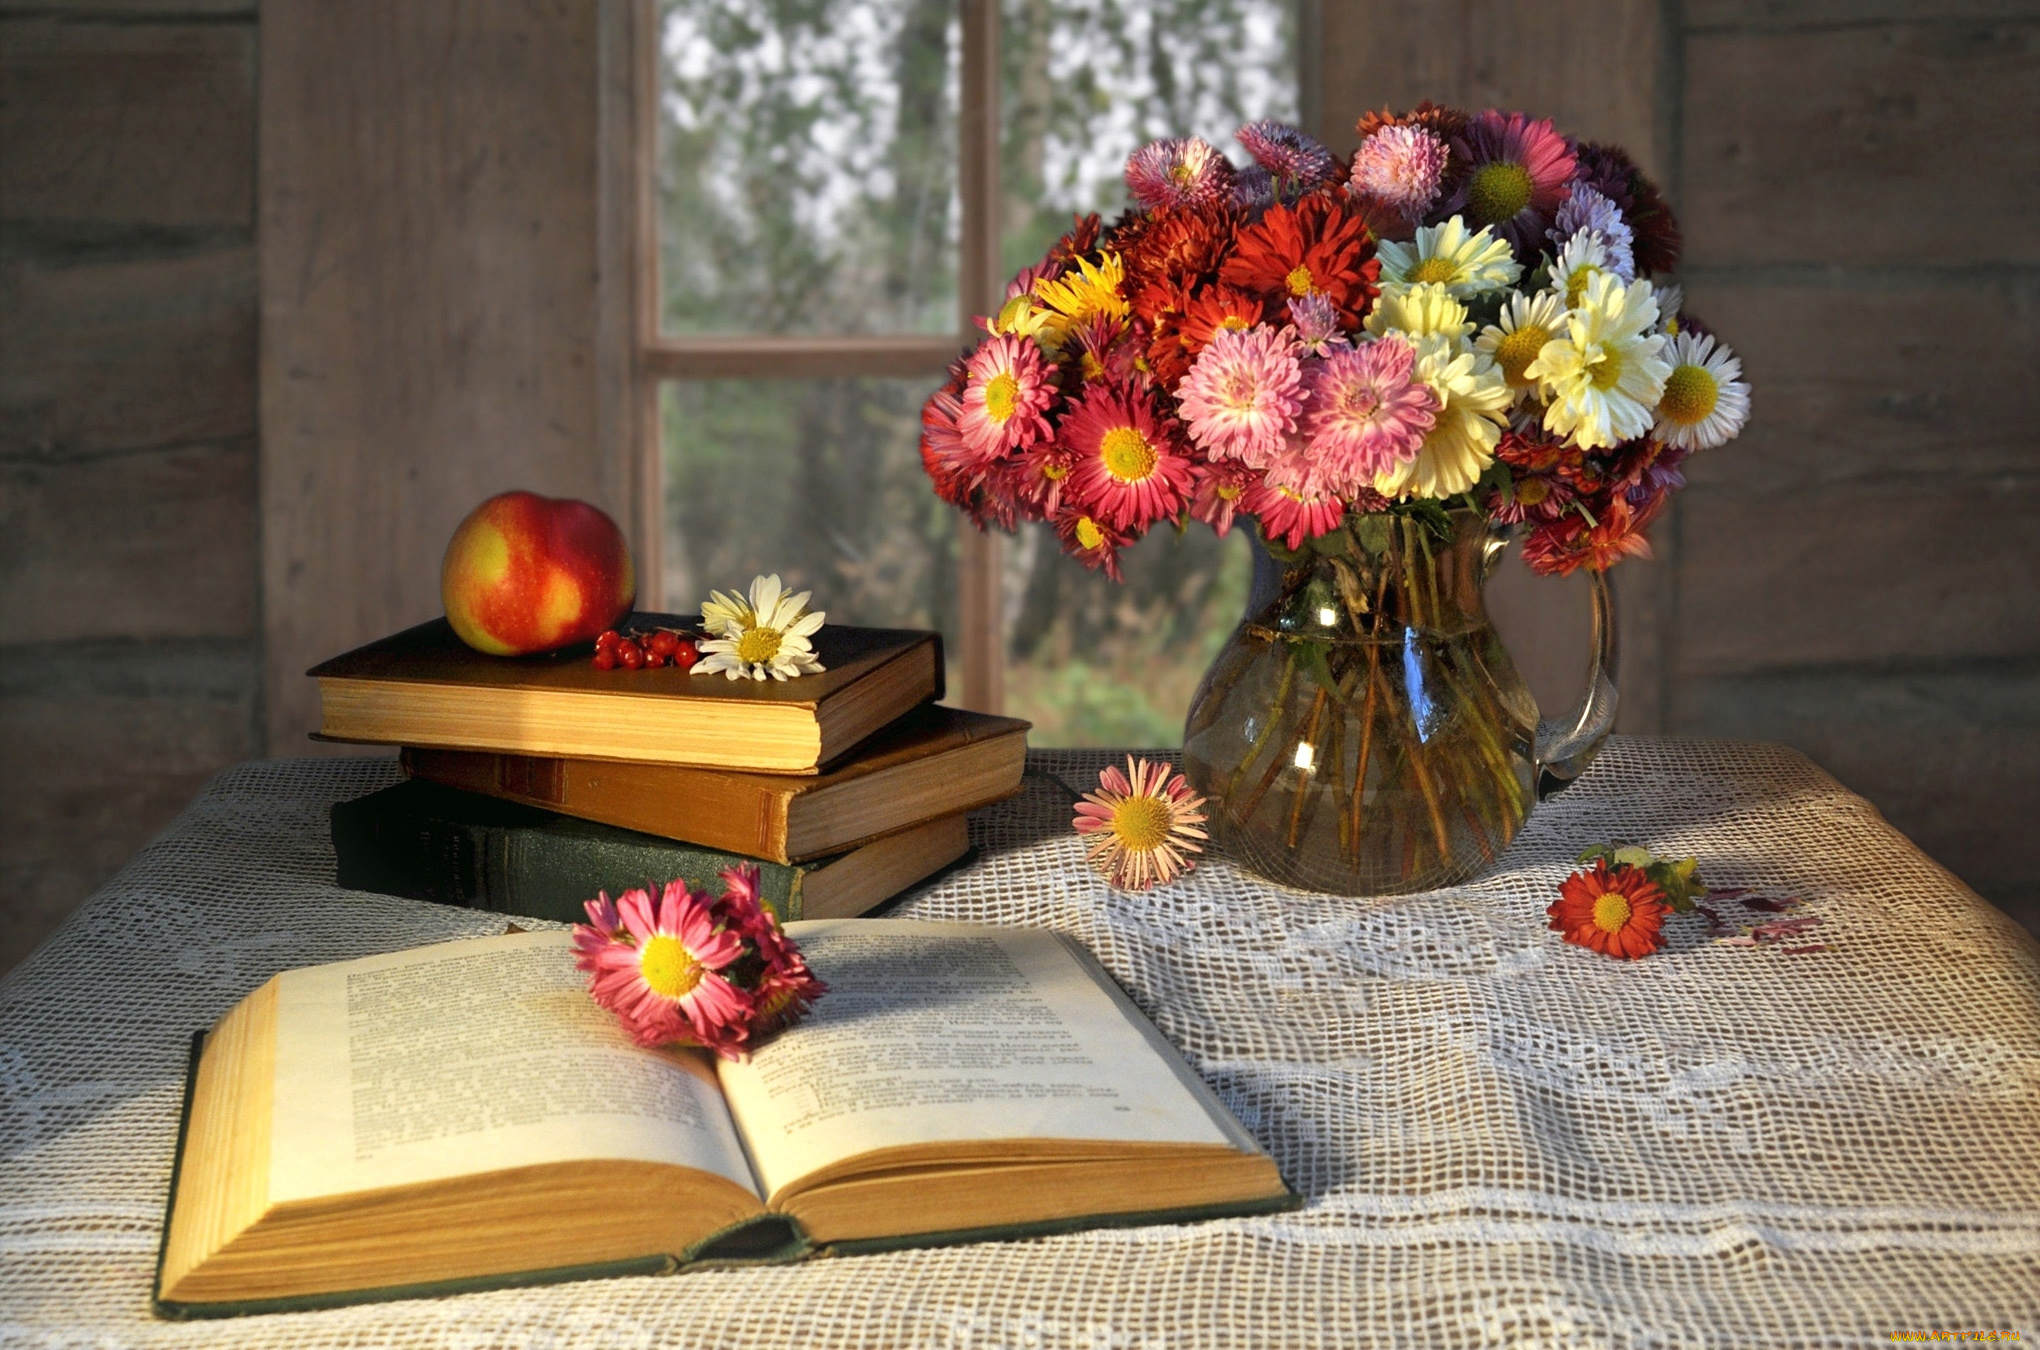 цветы, хризантемы, яблоко, натюрморт, книги, ваза